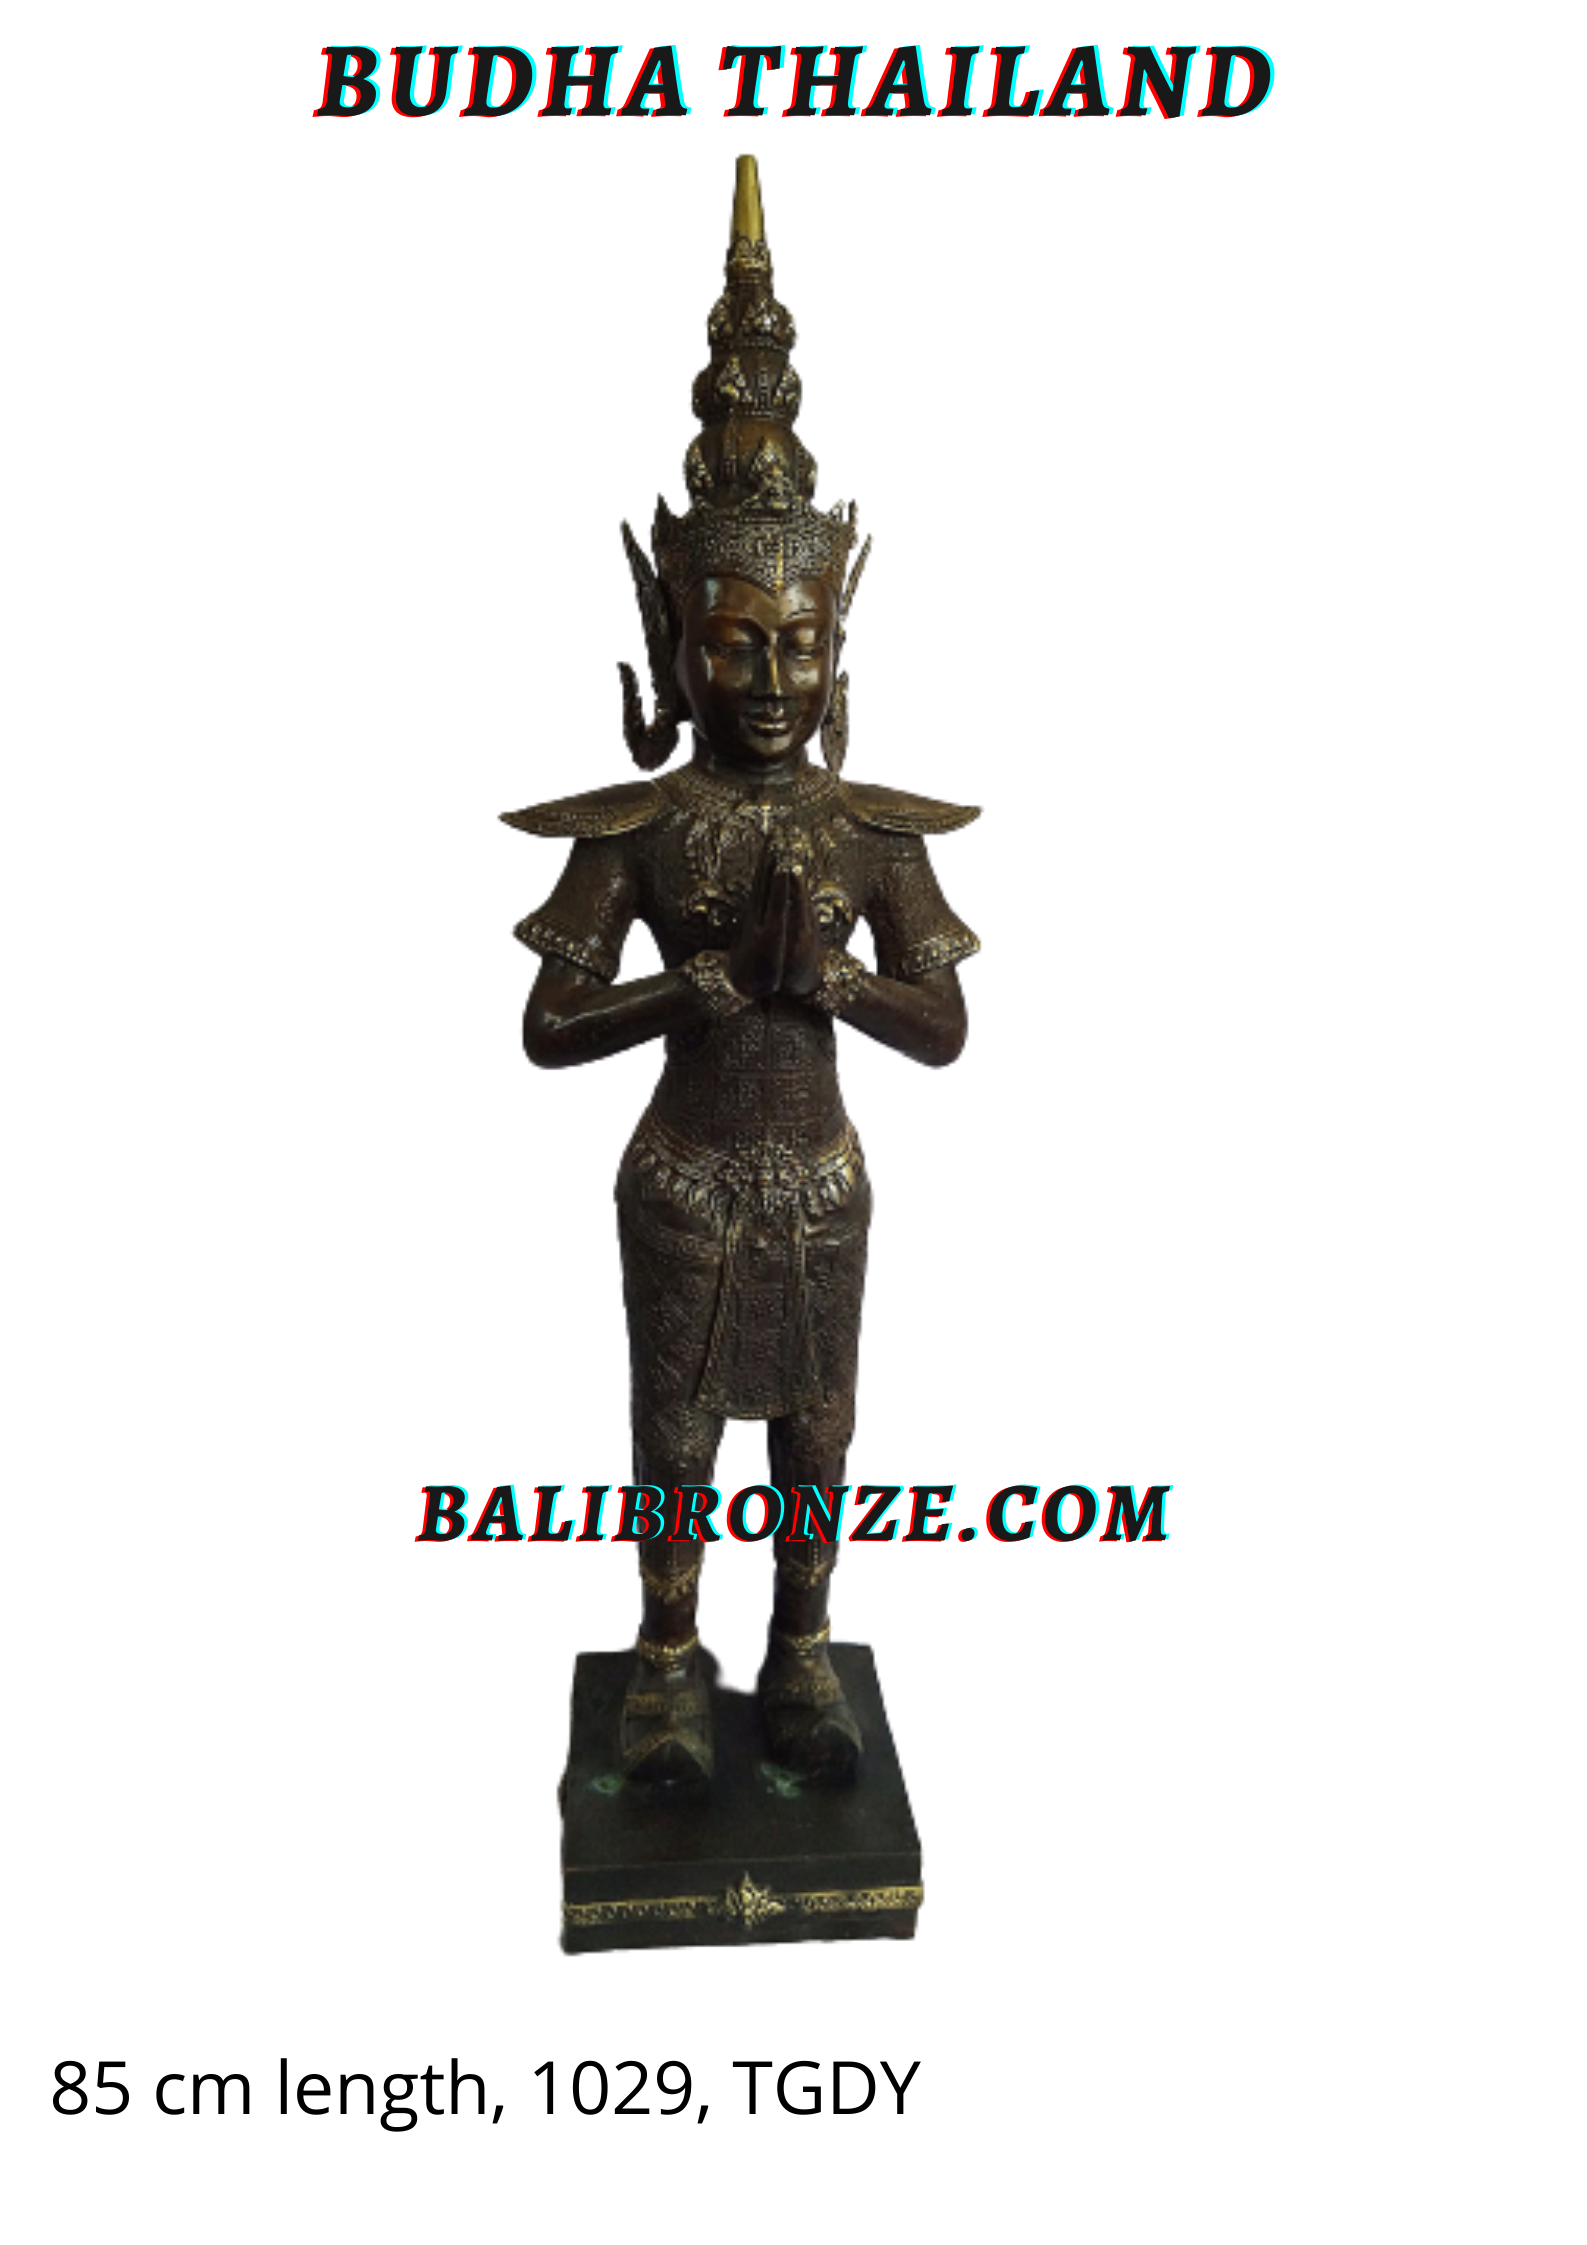 1029 Budha Thailand 85cm TGDY